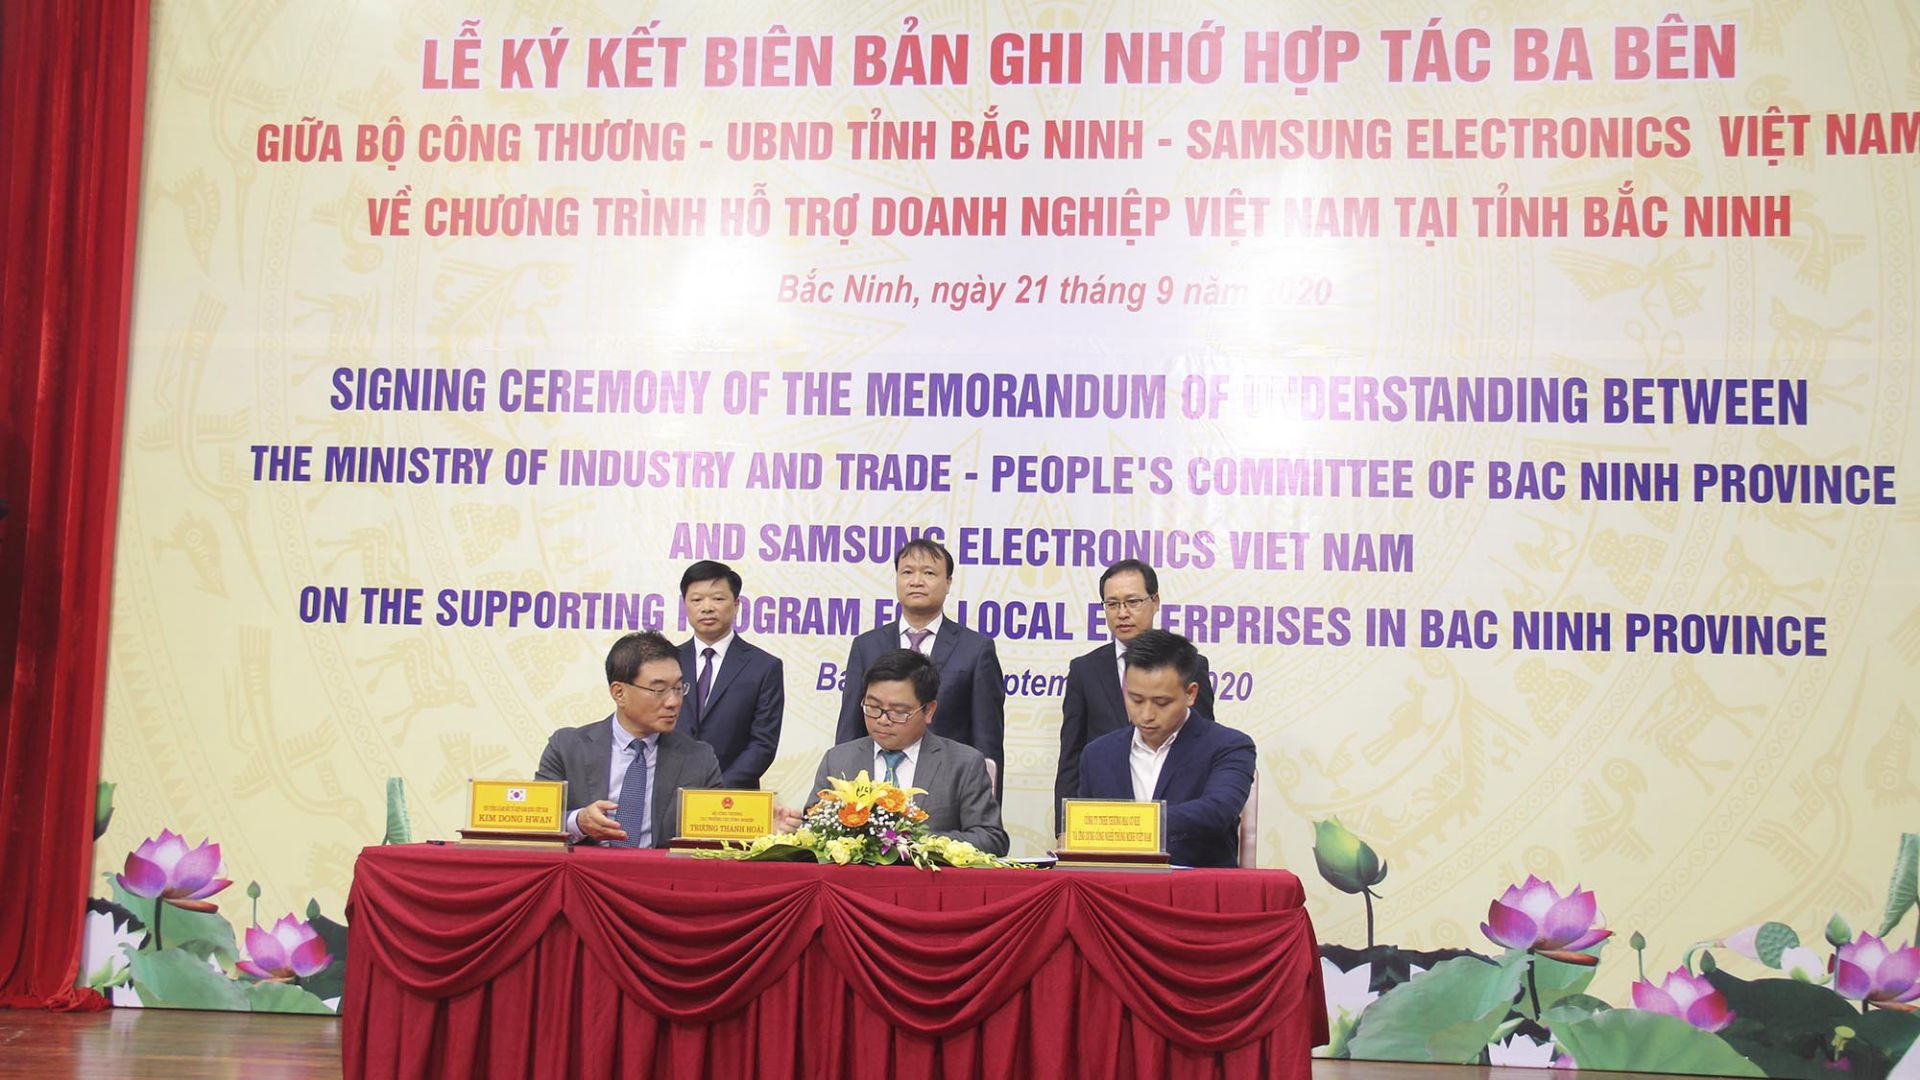 lễ ký kết Biên bản ghi nhớ hợp tác ba bên giữa Bộ Công thương - tỉnh Bắc Ninh - Samsung Việt Nam 